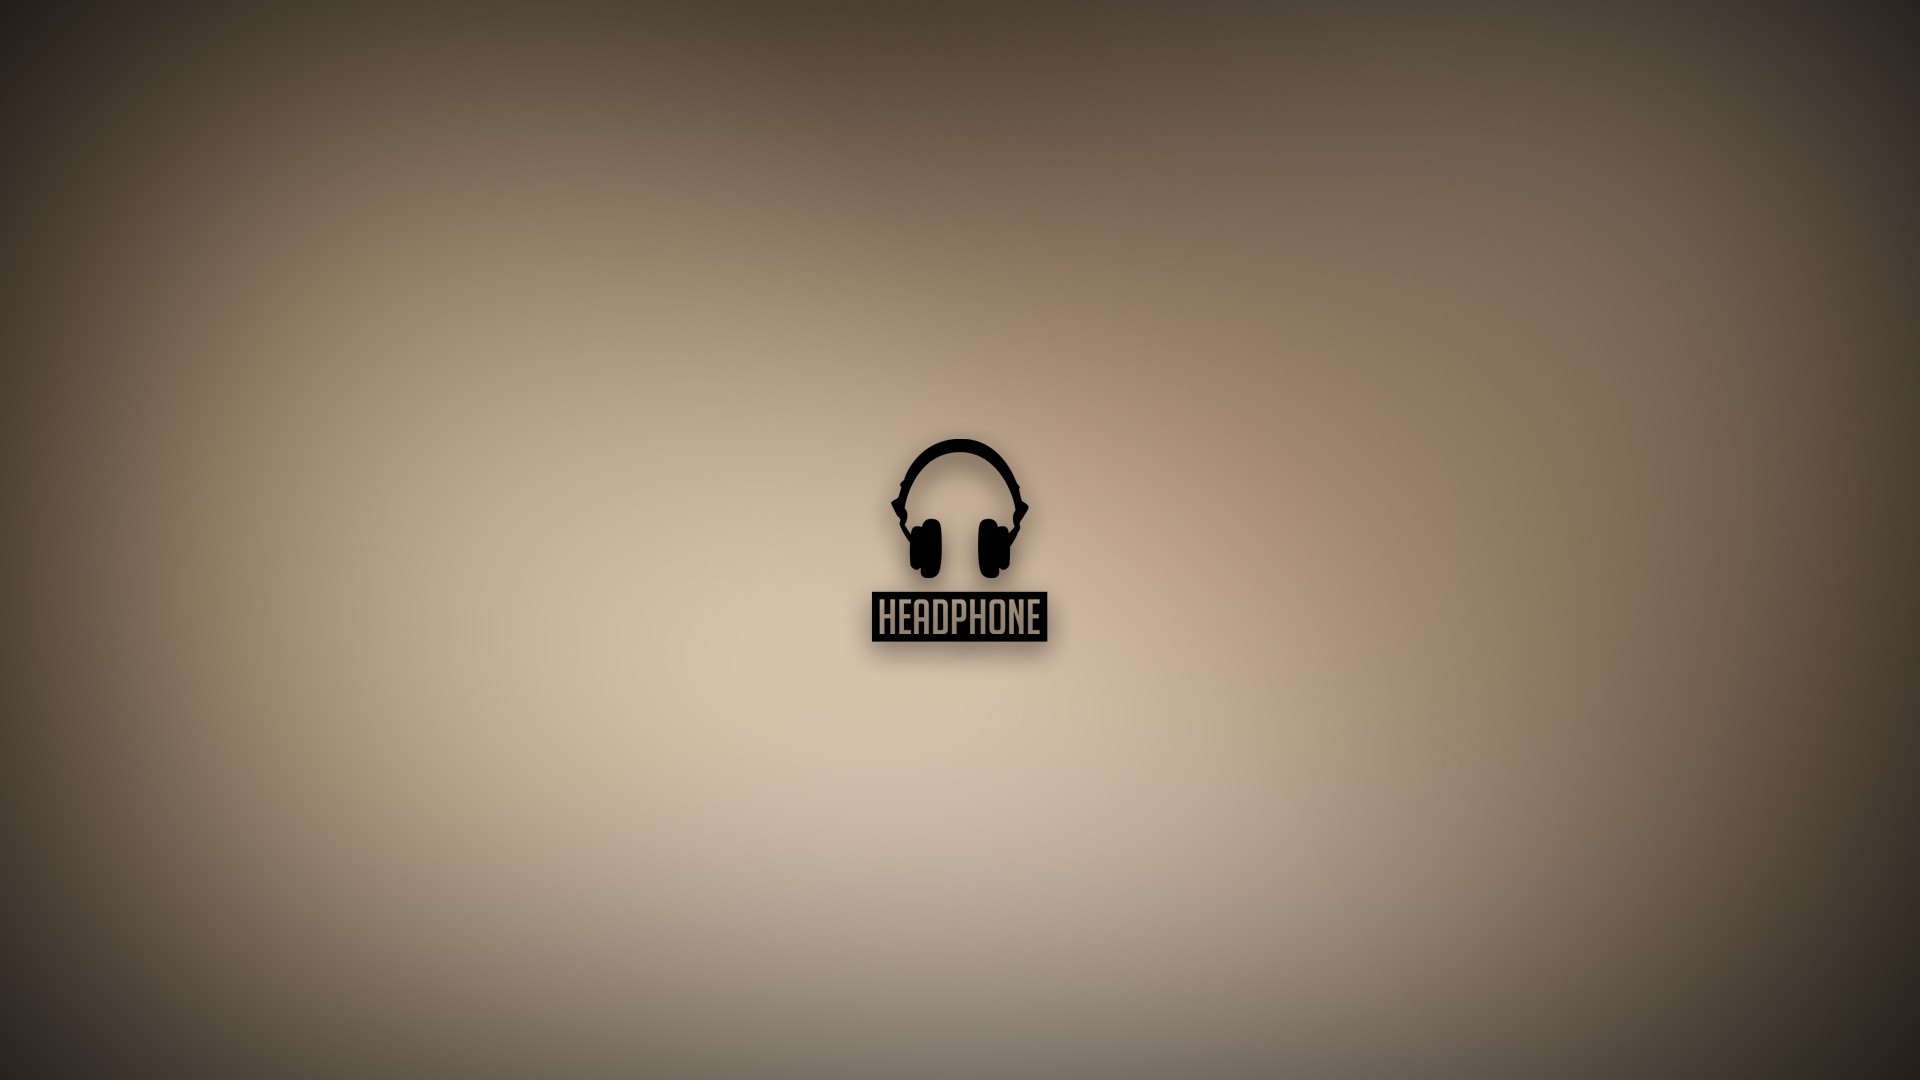 Modern Hd Wallpapers Desktop Backgrounds - Headphone - HD Wallpaper 